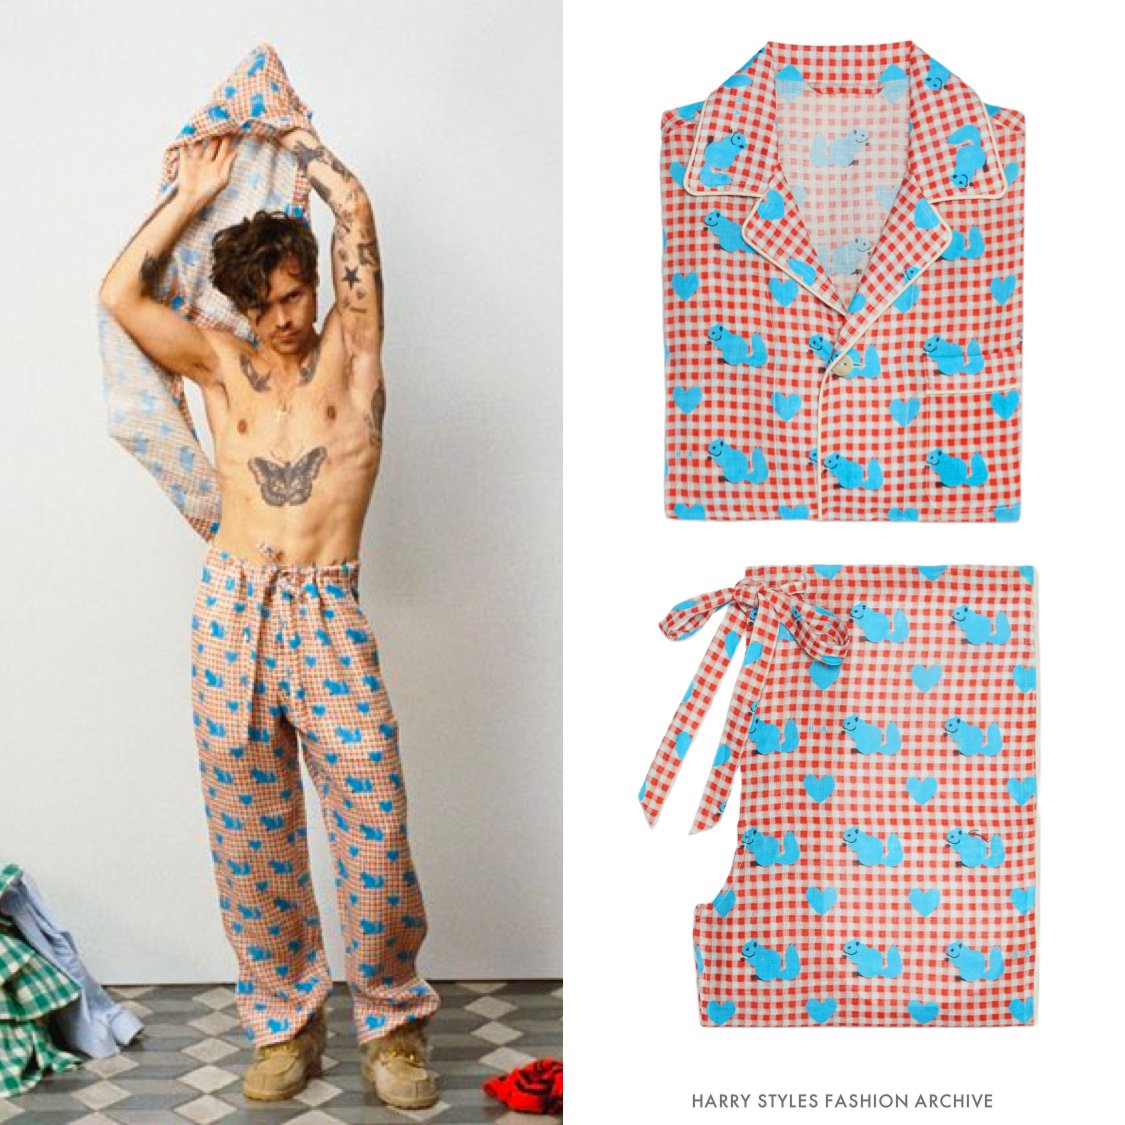 Harry Styles Fashion Archive on X: Gucci HA HA HA pajama set